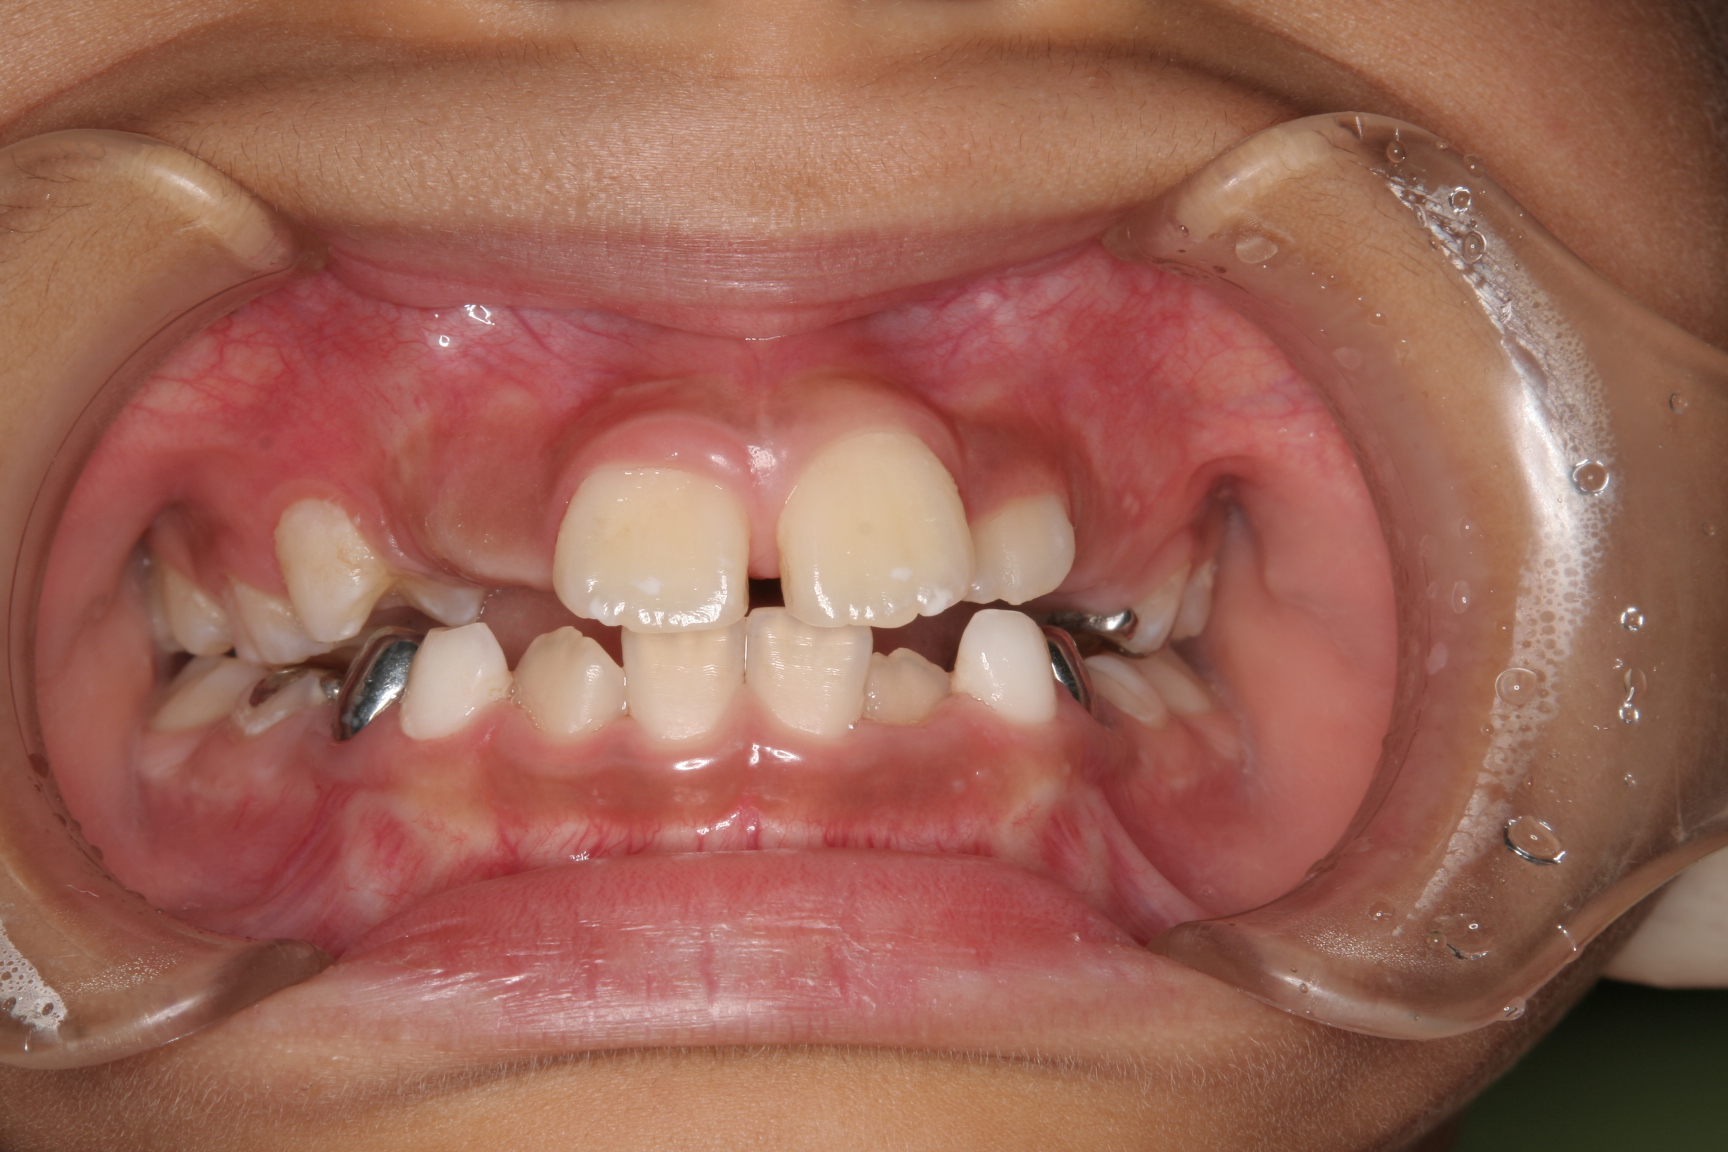 菰野町顎が小さくて大人の歯が並びそうにないんですけど出来るだけ歯を抜かない矯正歯科